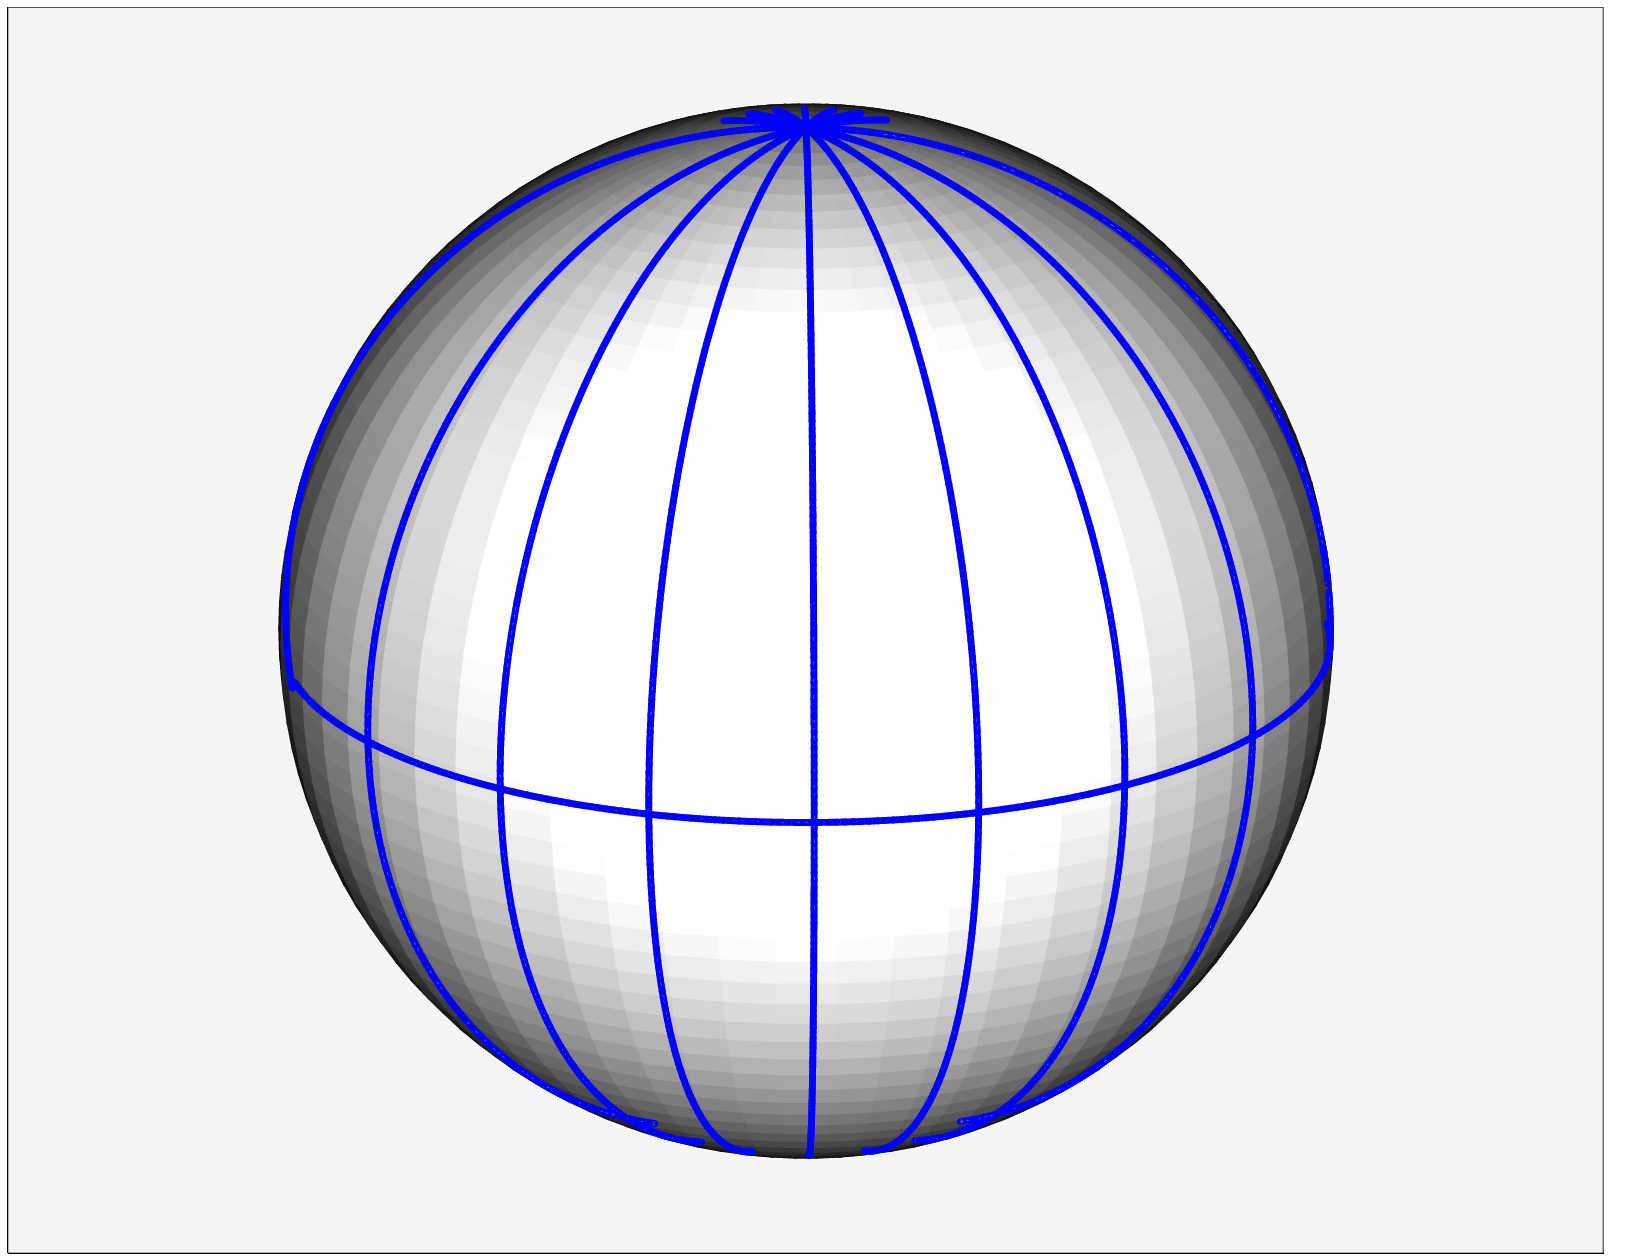 1.1 Inzidenzaxiome ist. Die Bezeichnung Gerade stammt ursprünglich aus der euklidischen Geometrie, d.h. sie entspringt der Geometrie unserer Anschauung.